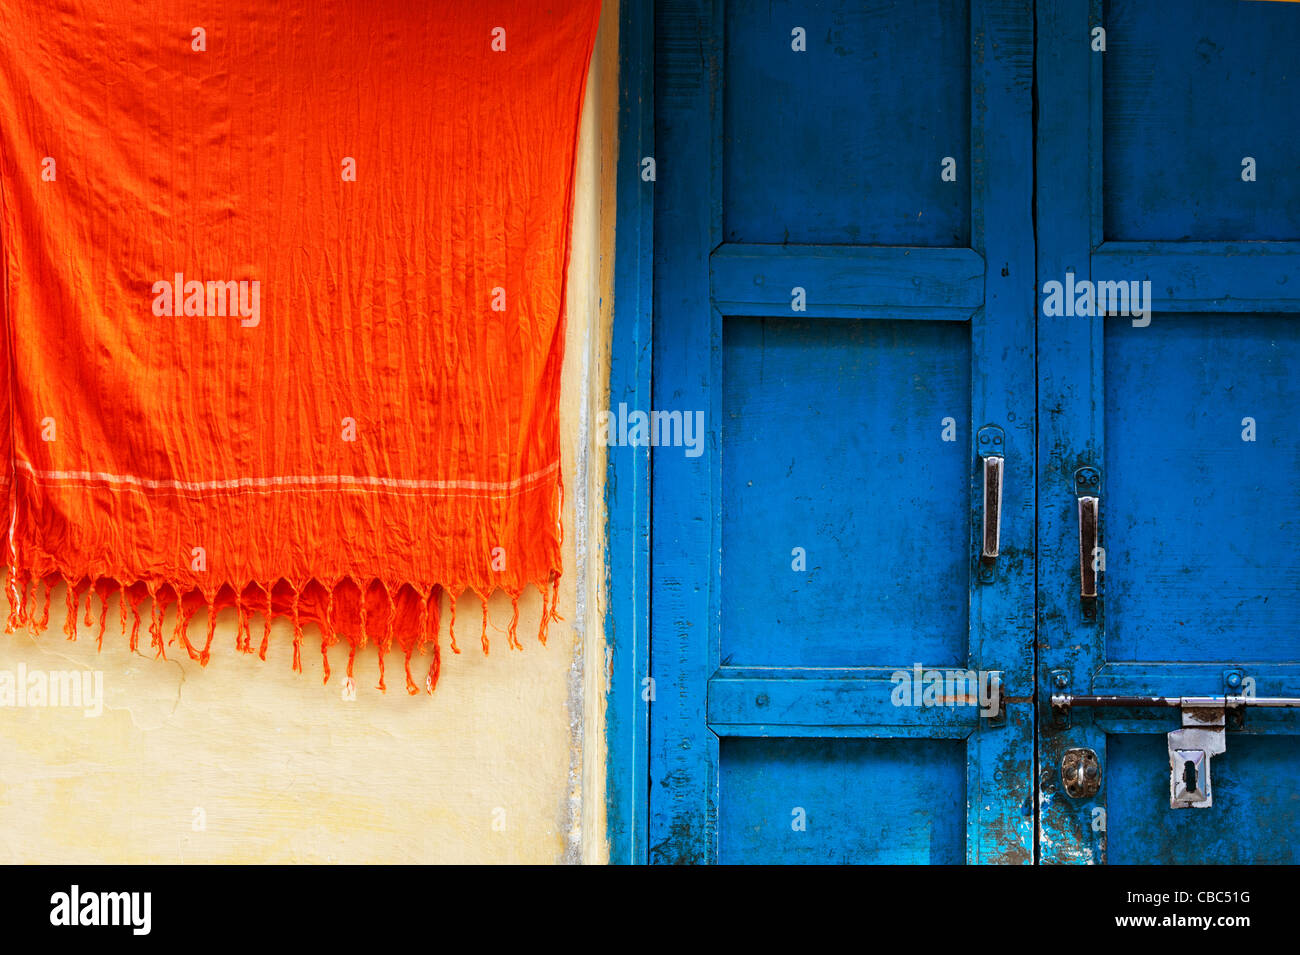 Matériel orange à côté de portes bleues suspendues d'une maison de village indien. Praedsh landhra, Inde Banque D'Images